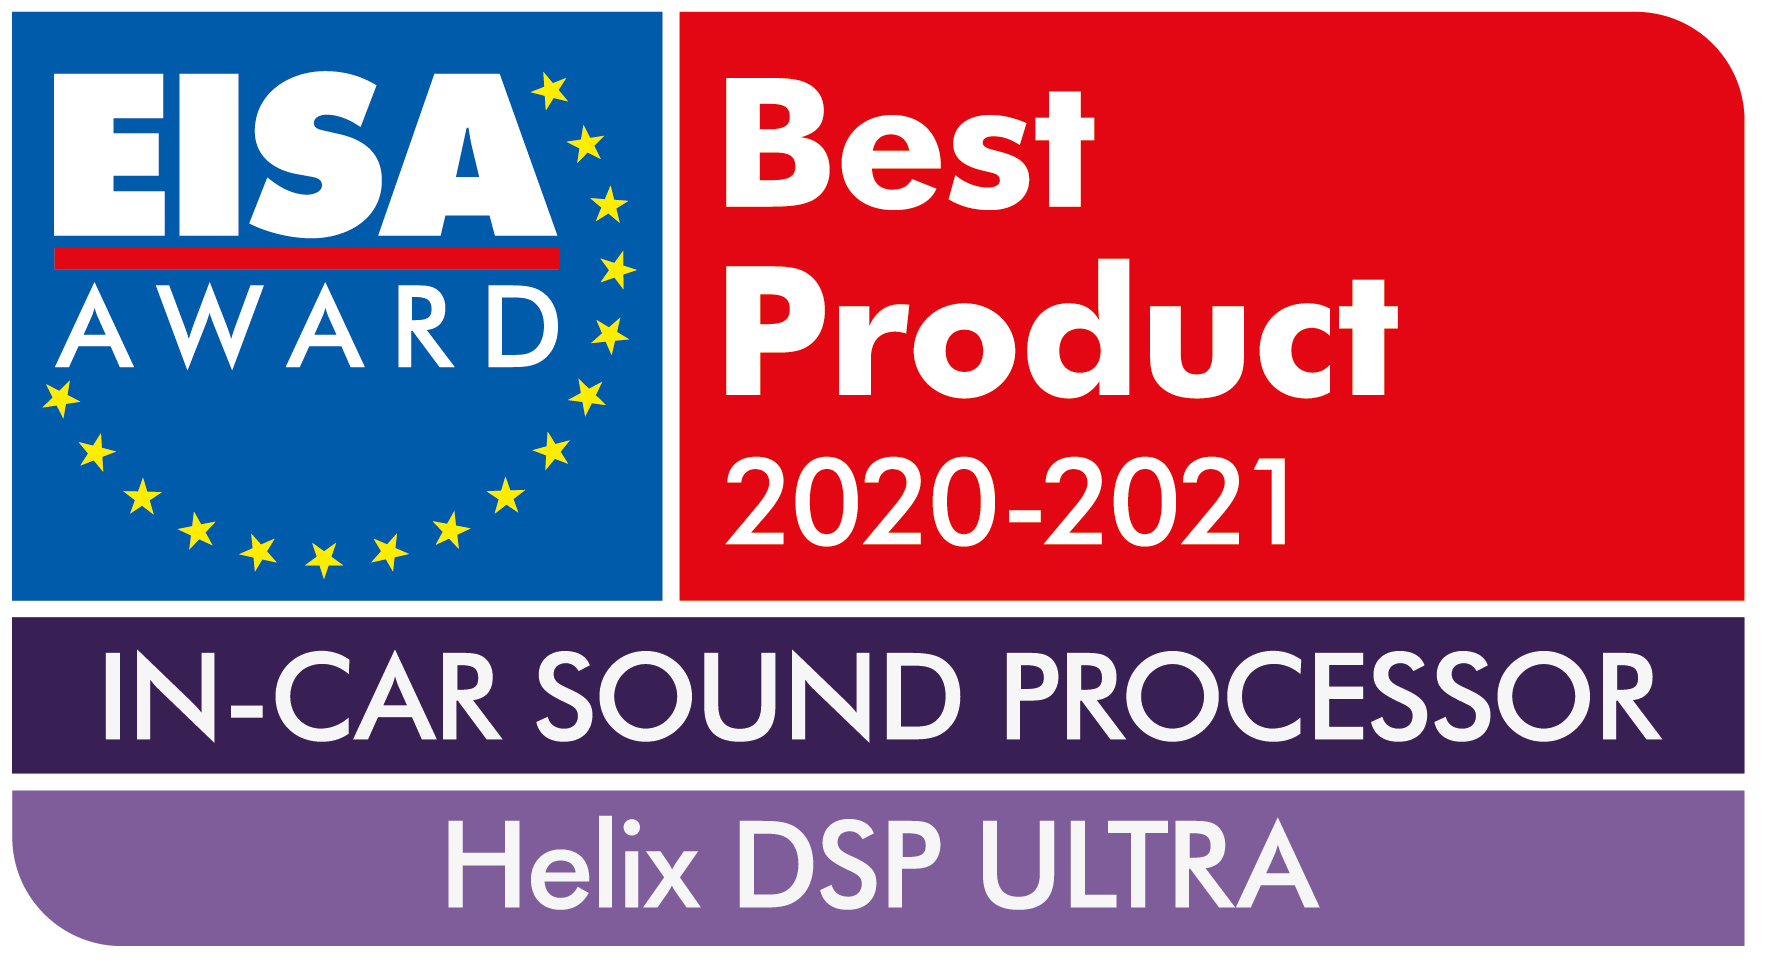 EISA-Award-Helix-DSP-ULTRA